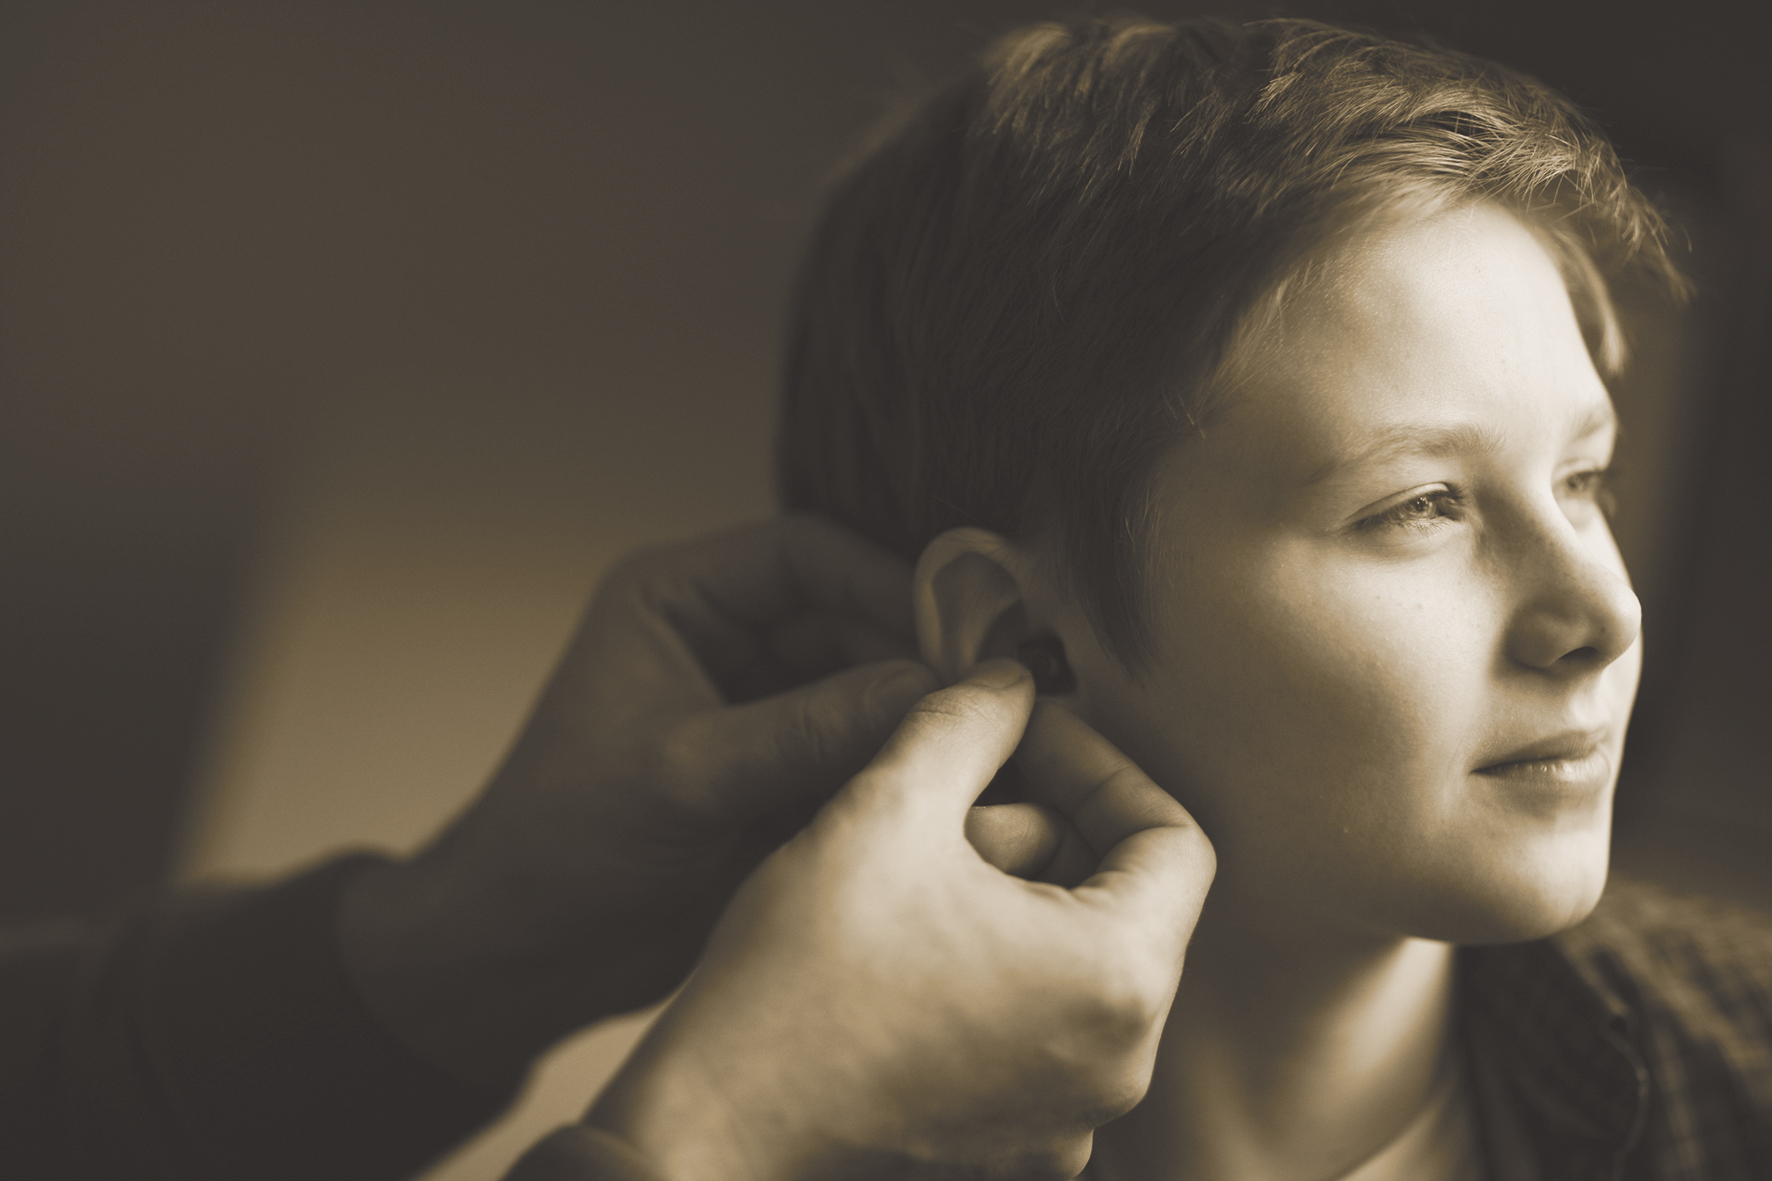 LOR Klīnikā var noteikt  dzirdes asumu,  dzirdes traucējumu slieksni,  izvēlēties piemērotu  dzirdes aparātu